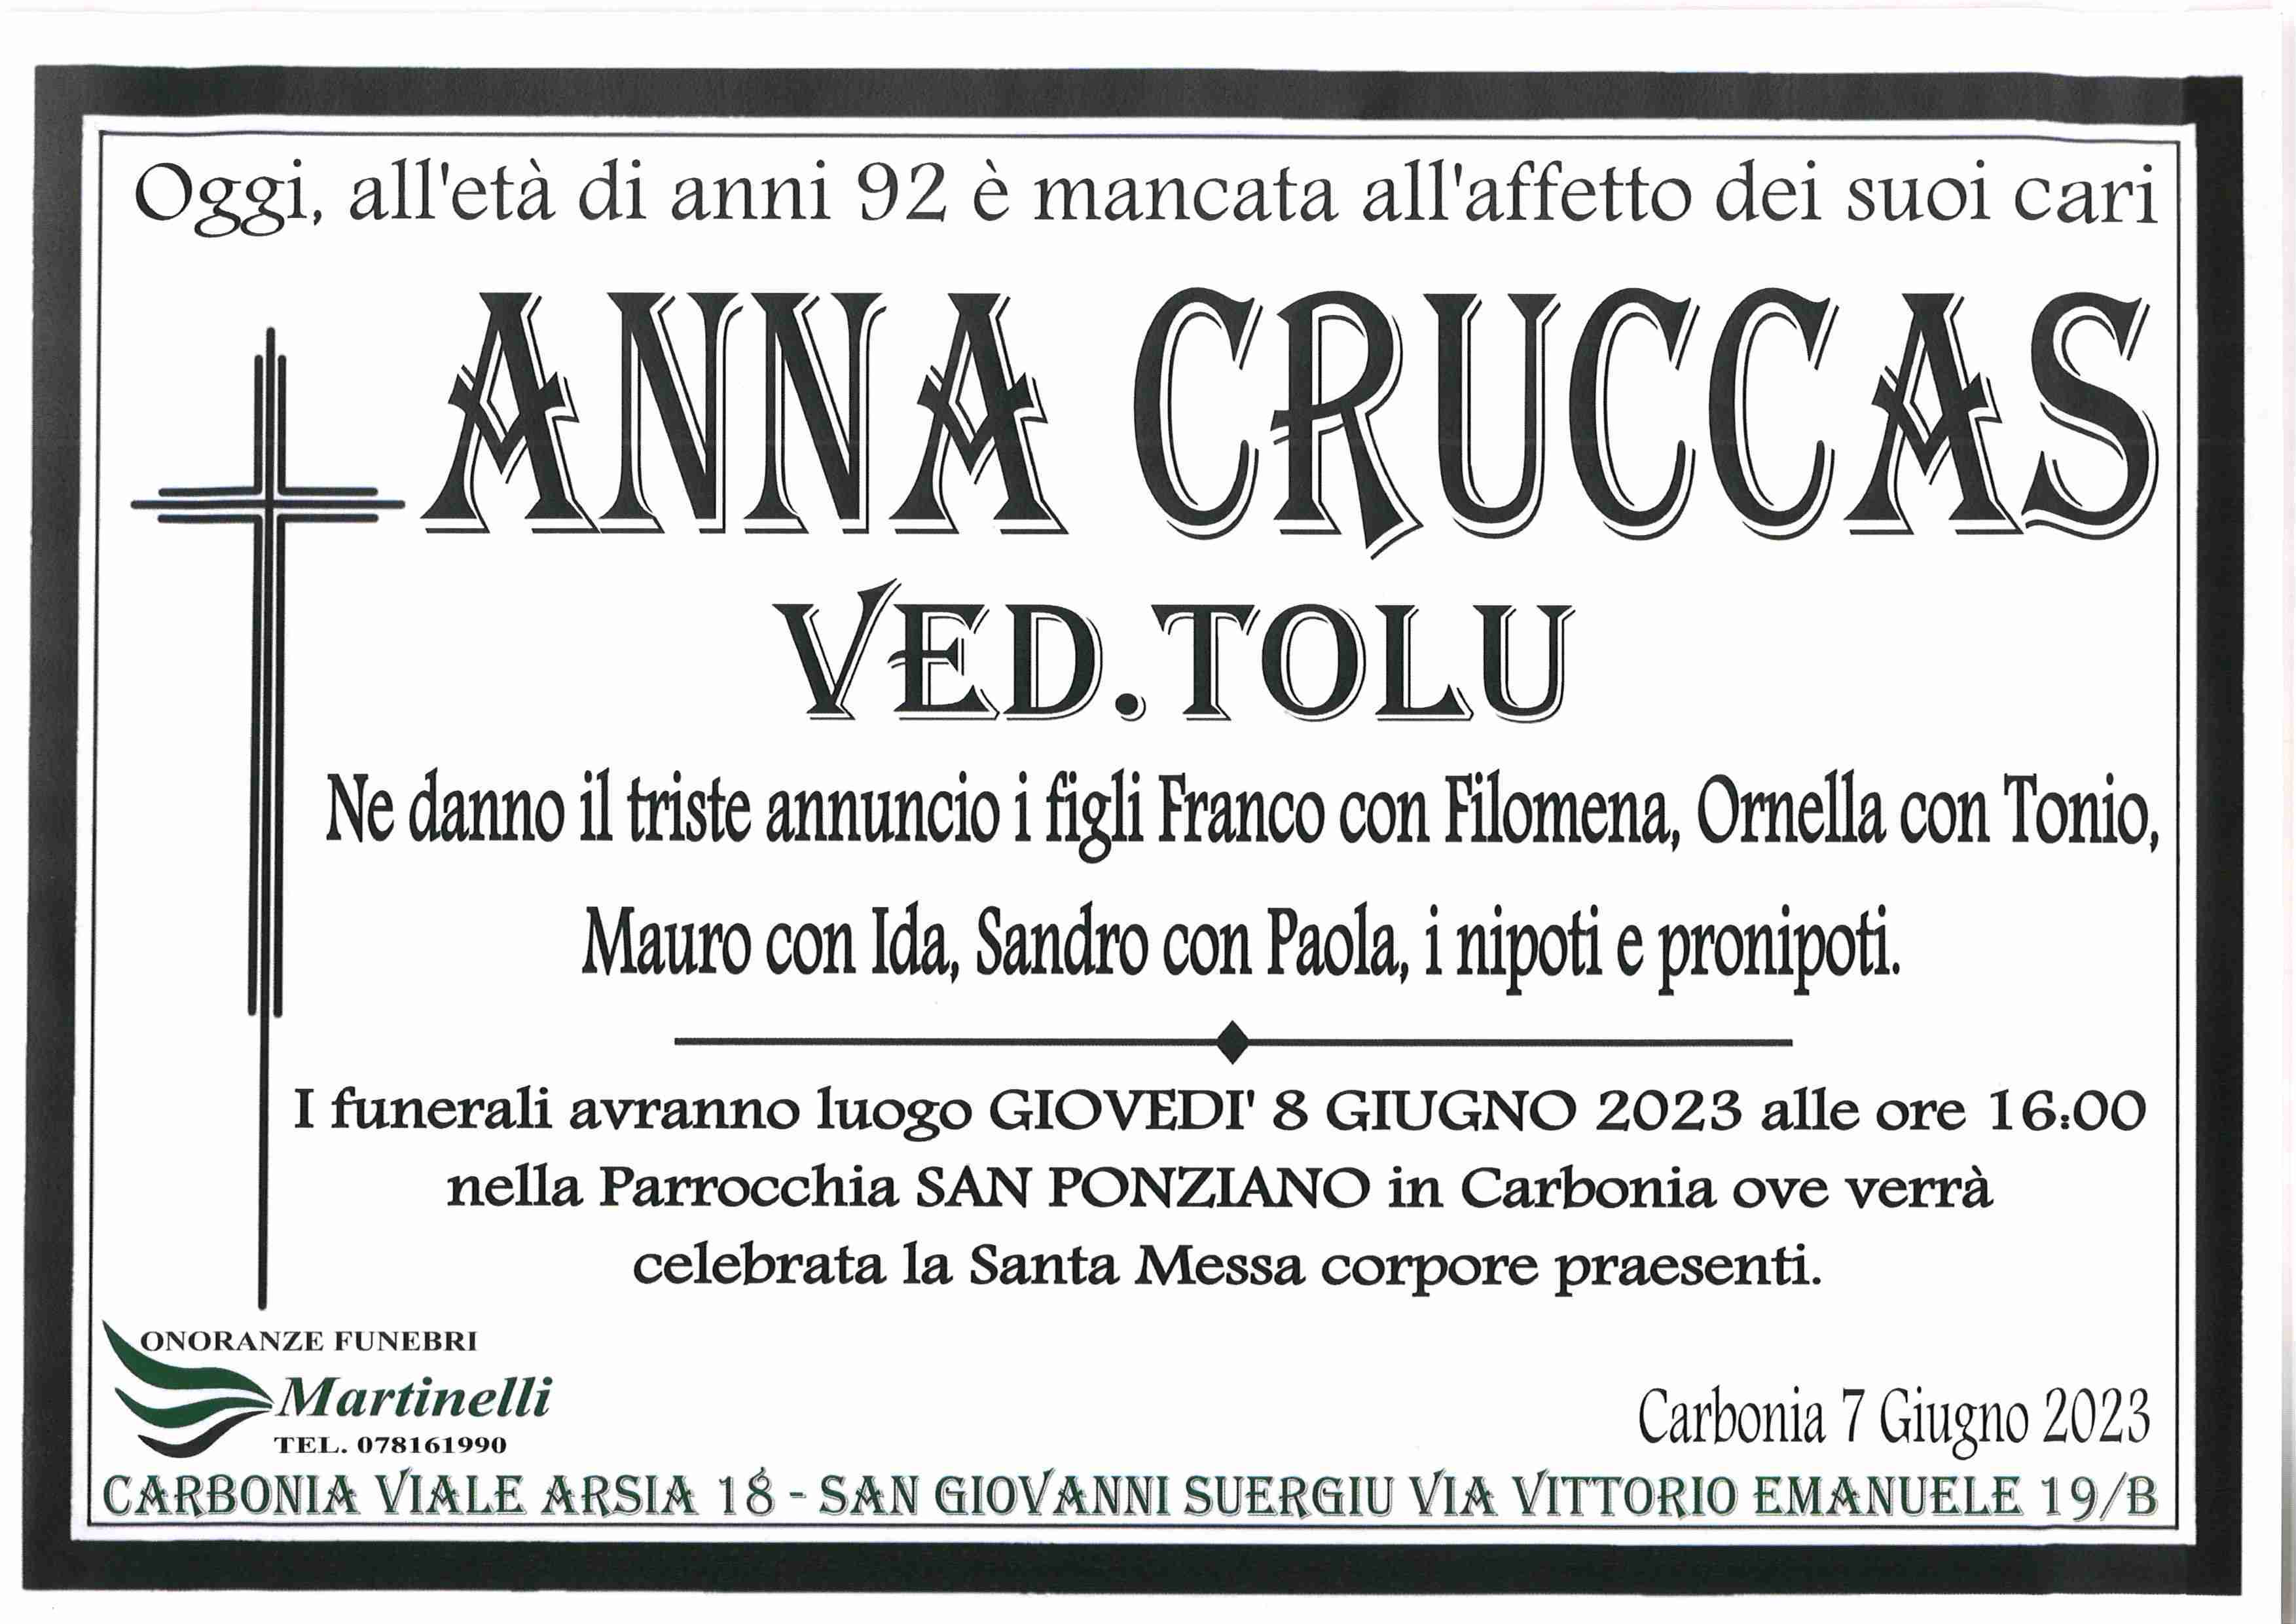 Anna Maria Cruccas